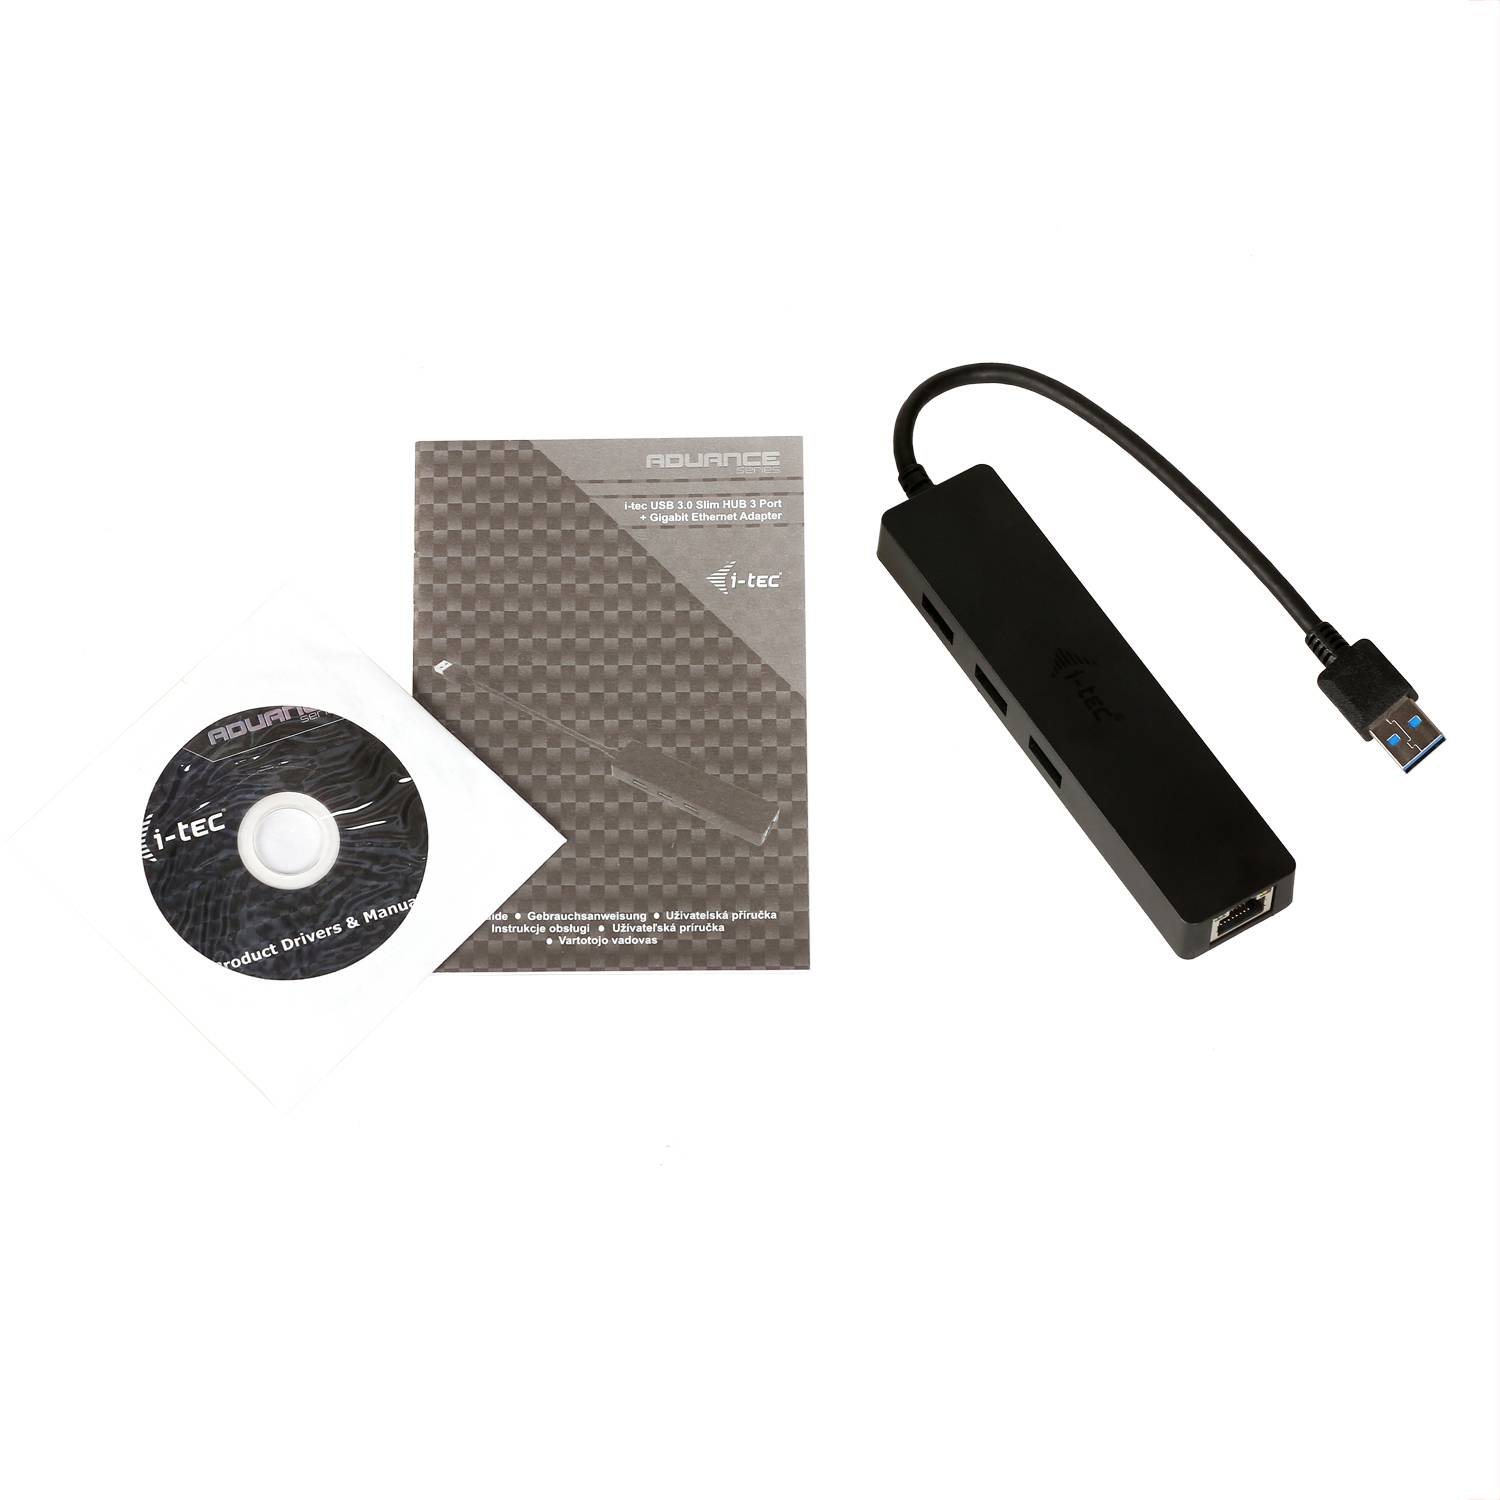 Rca Informatique - image du produit : I-TEC SLIM HUB 3 PORT USB 3.0 GB ETHERNET ADAPTER WIN/MAC